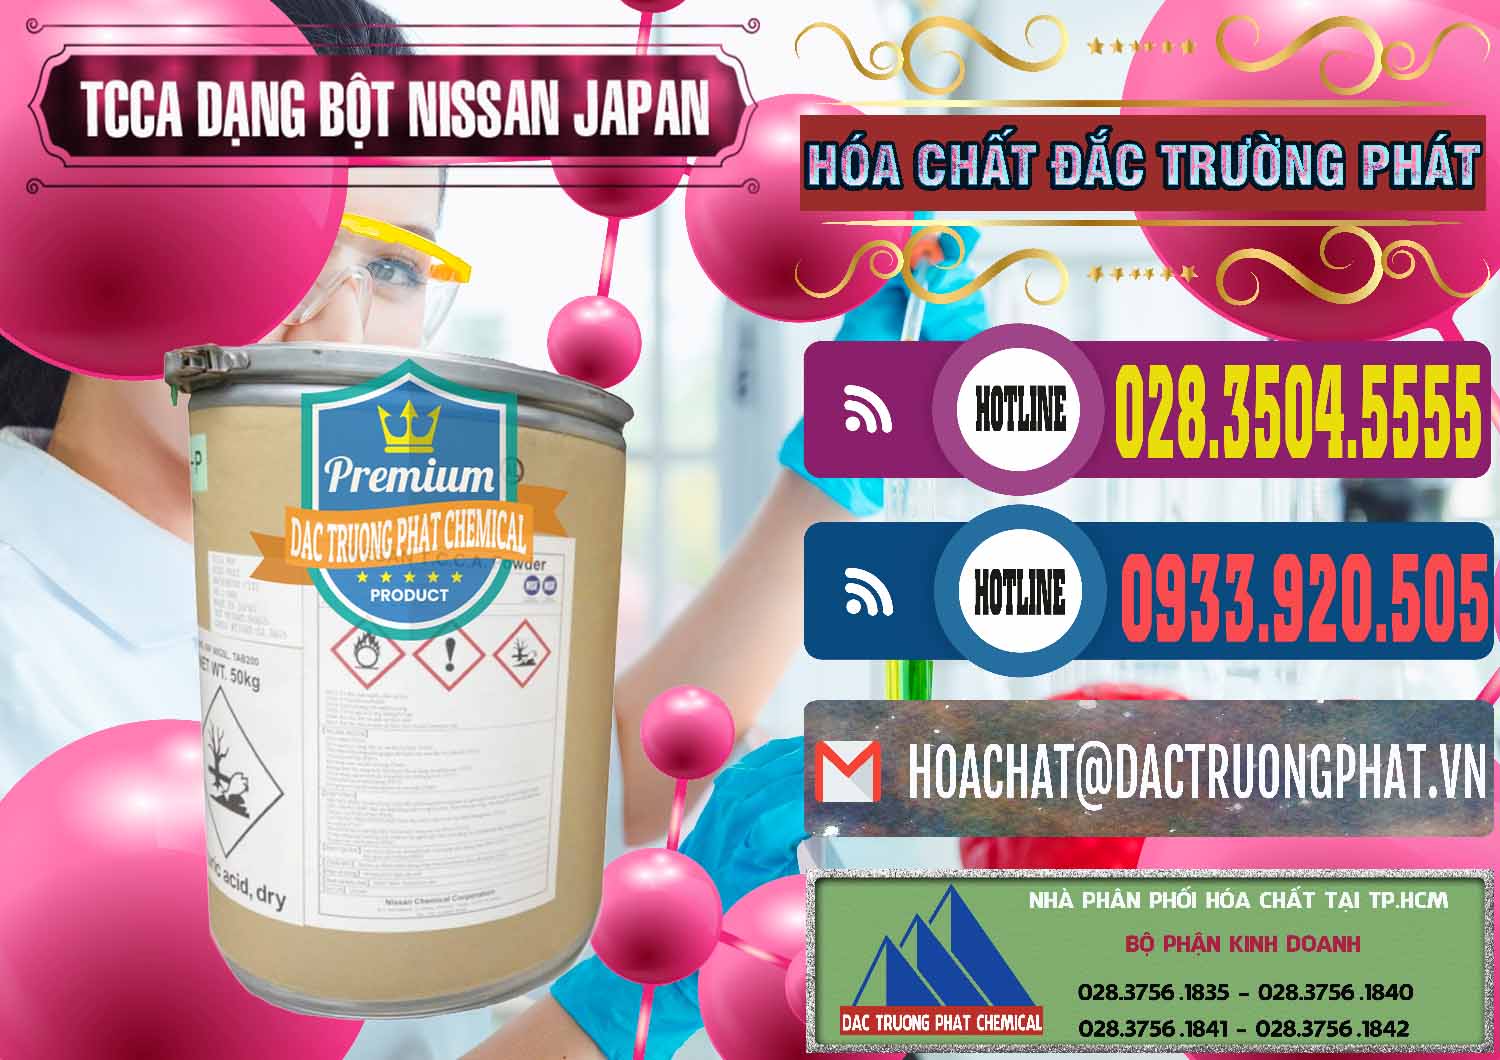 Nhập khẩu _ bán TCCA - Acid Trichloroisocyanuric 90% Dạng Bột Nissan Nhật Bản Japan - 0375 - Nhà cung cấp và phân phối hóa chất tại TP.HCM - muabanhoachat.com.vn